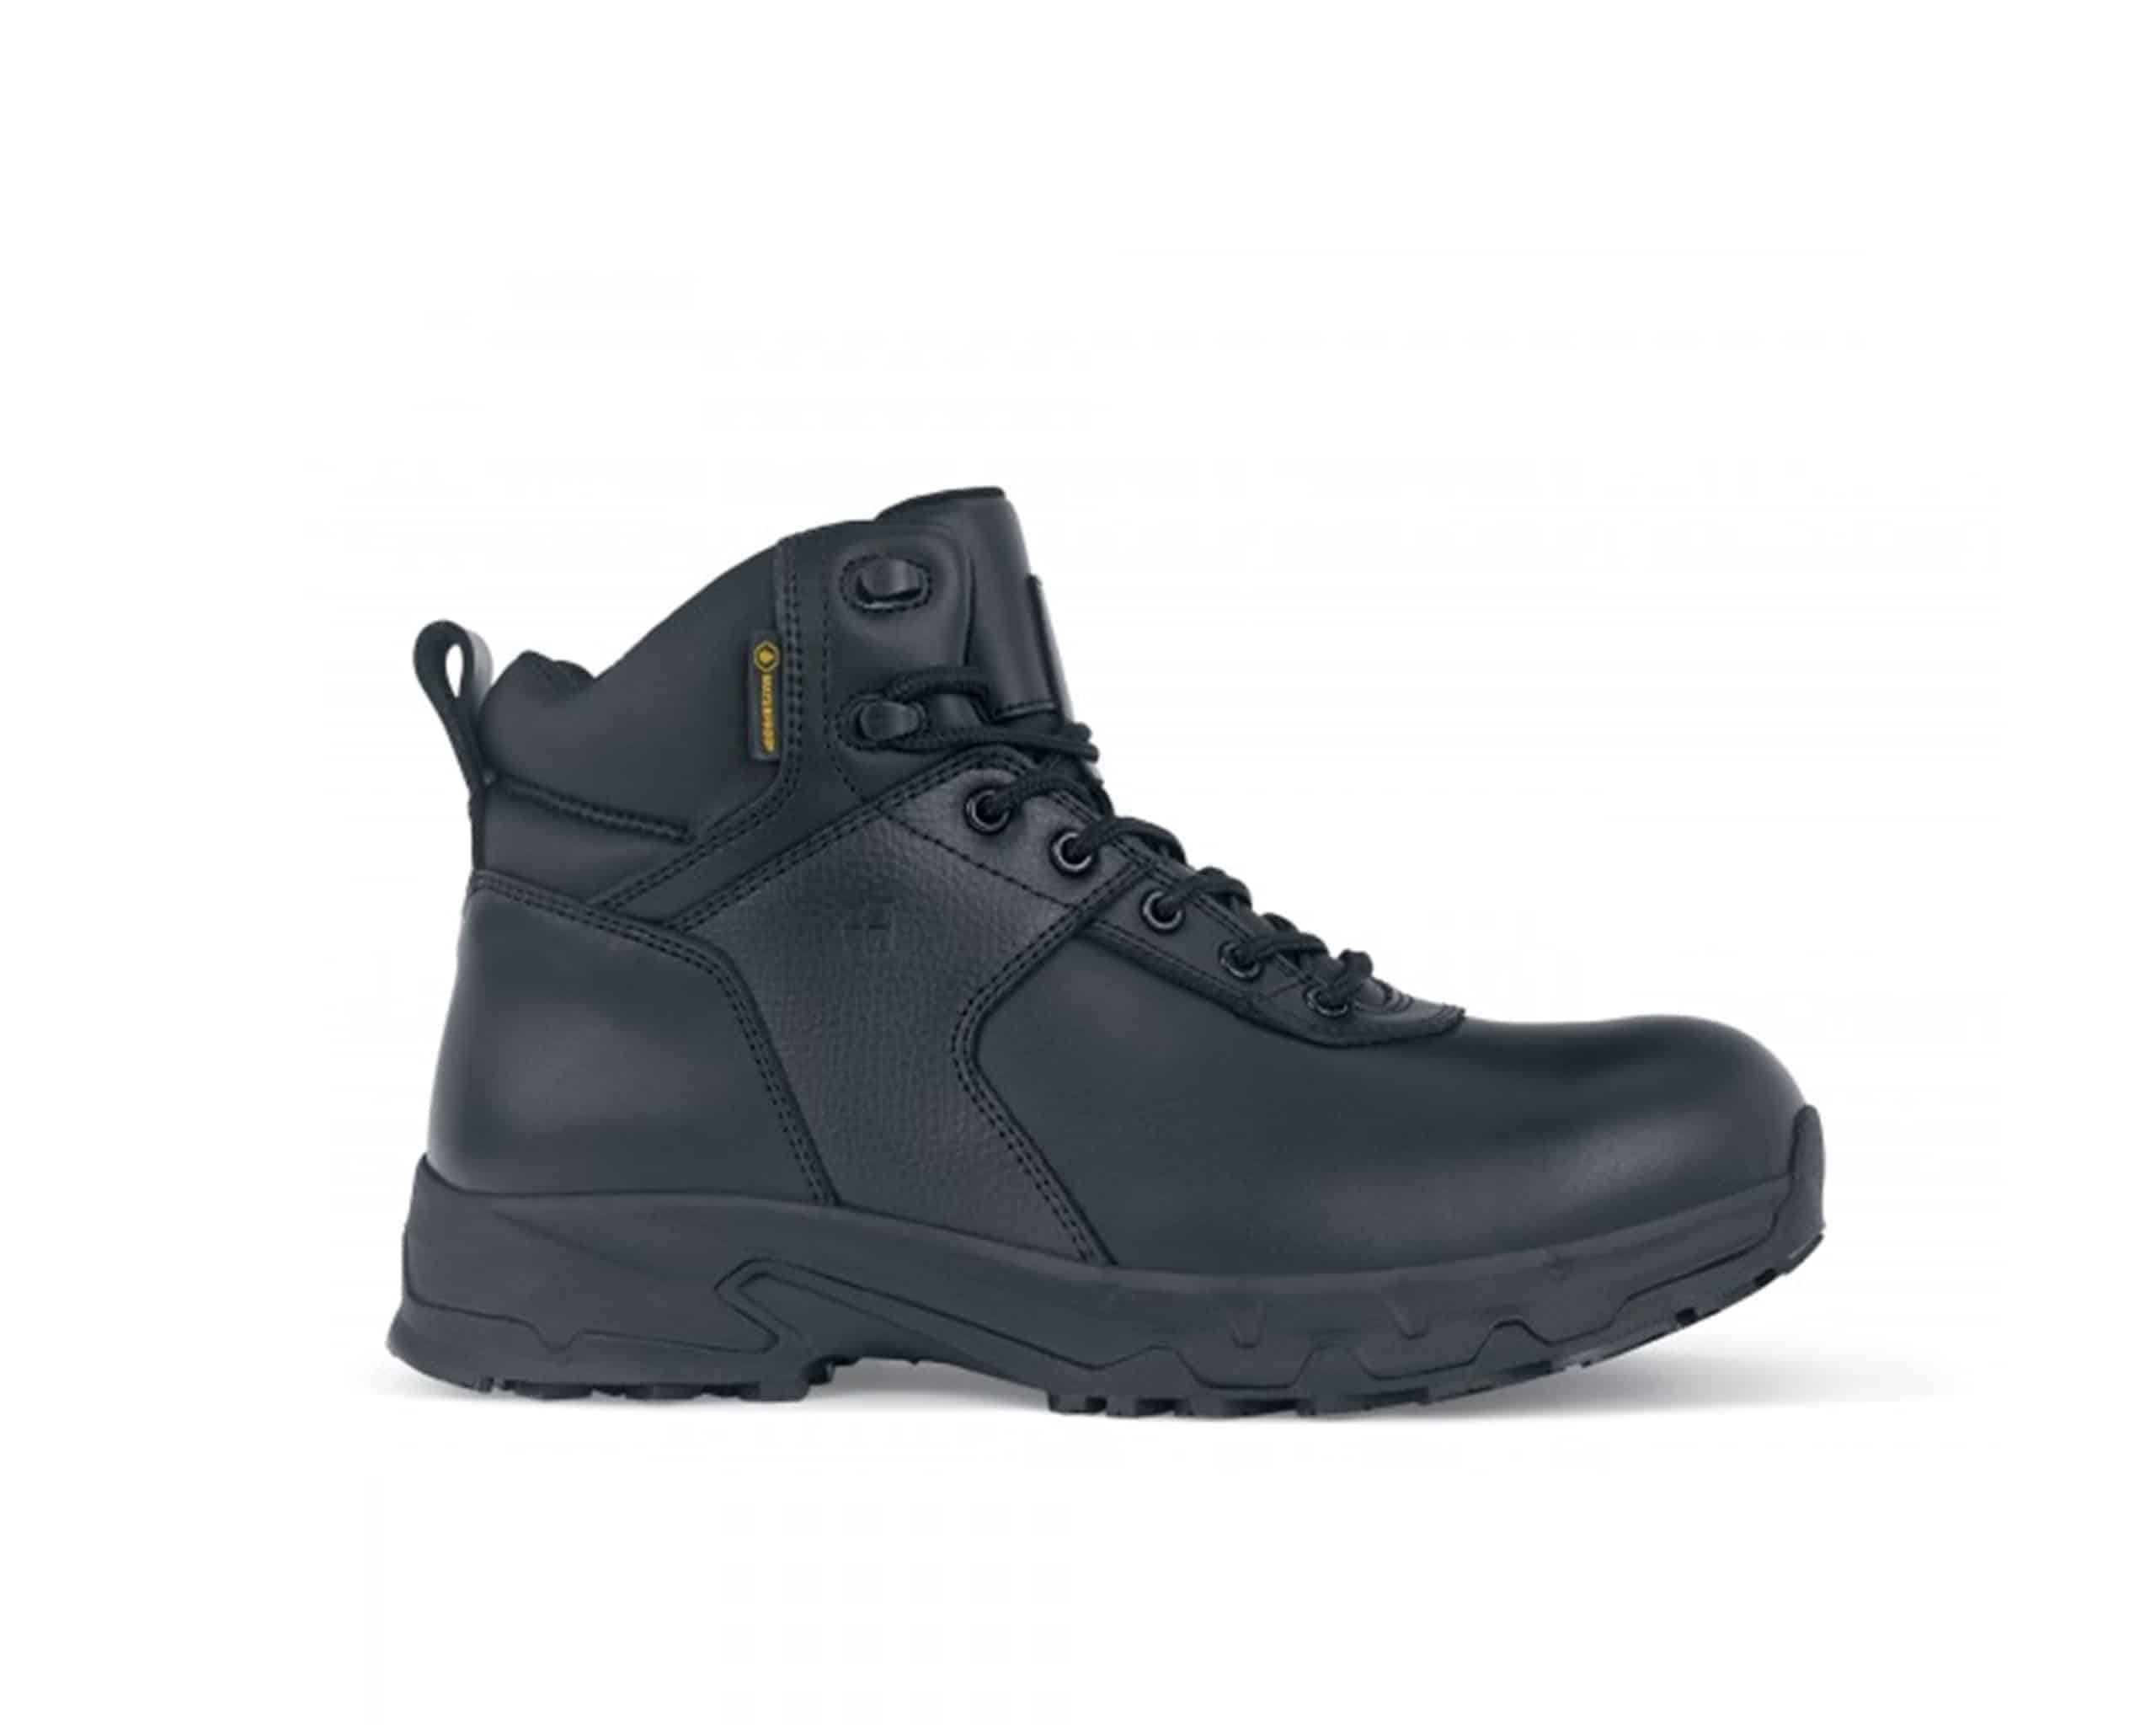 shoes for crews men's boots